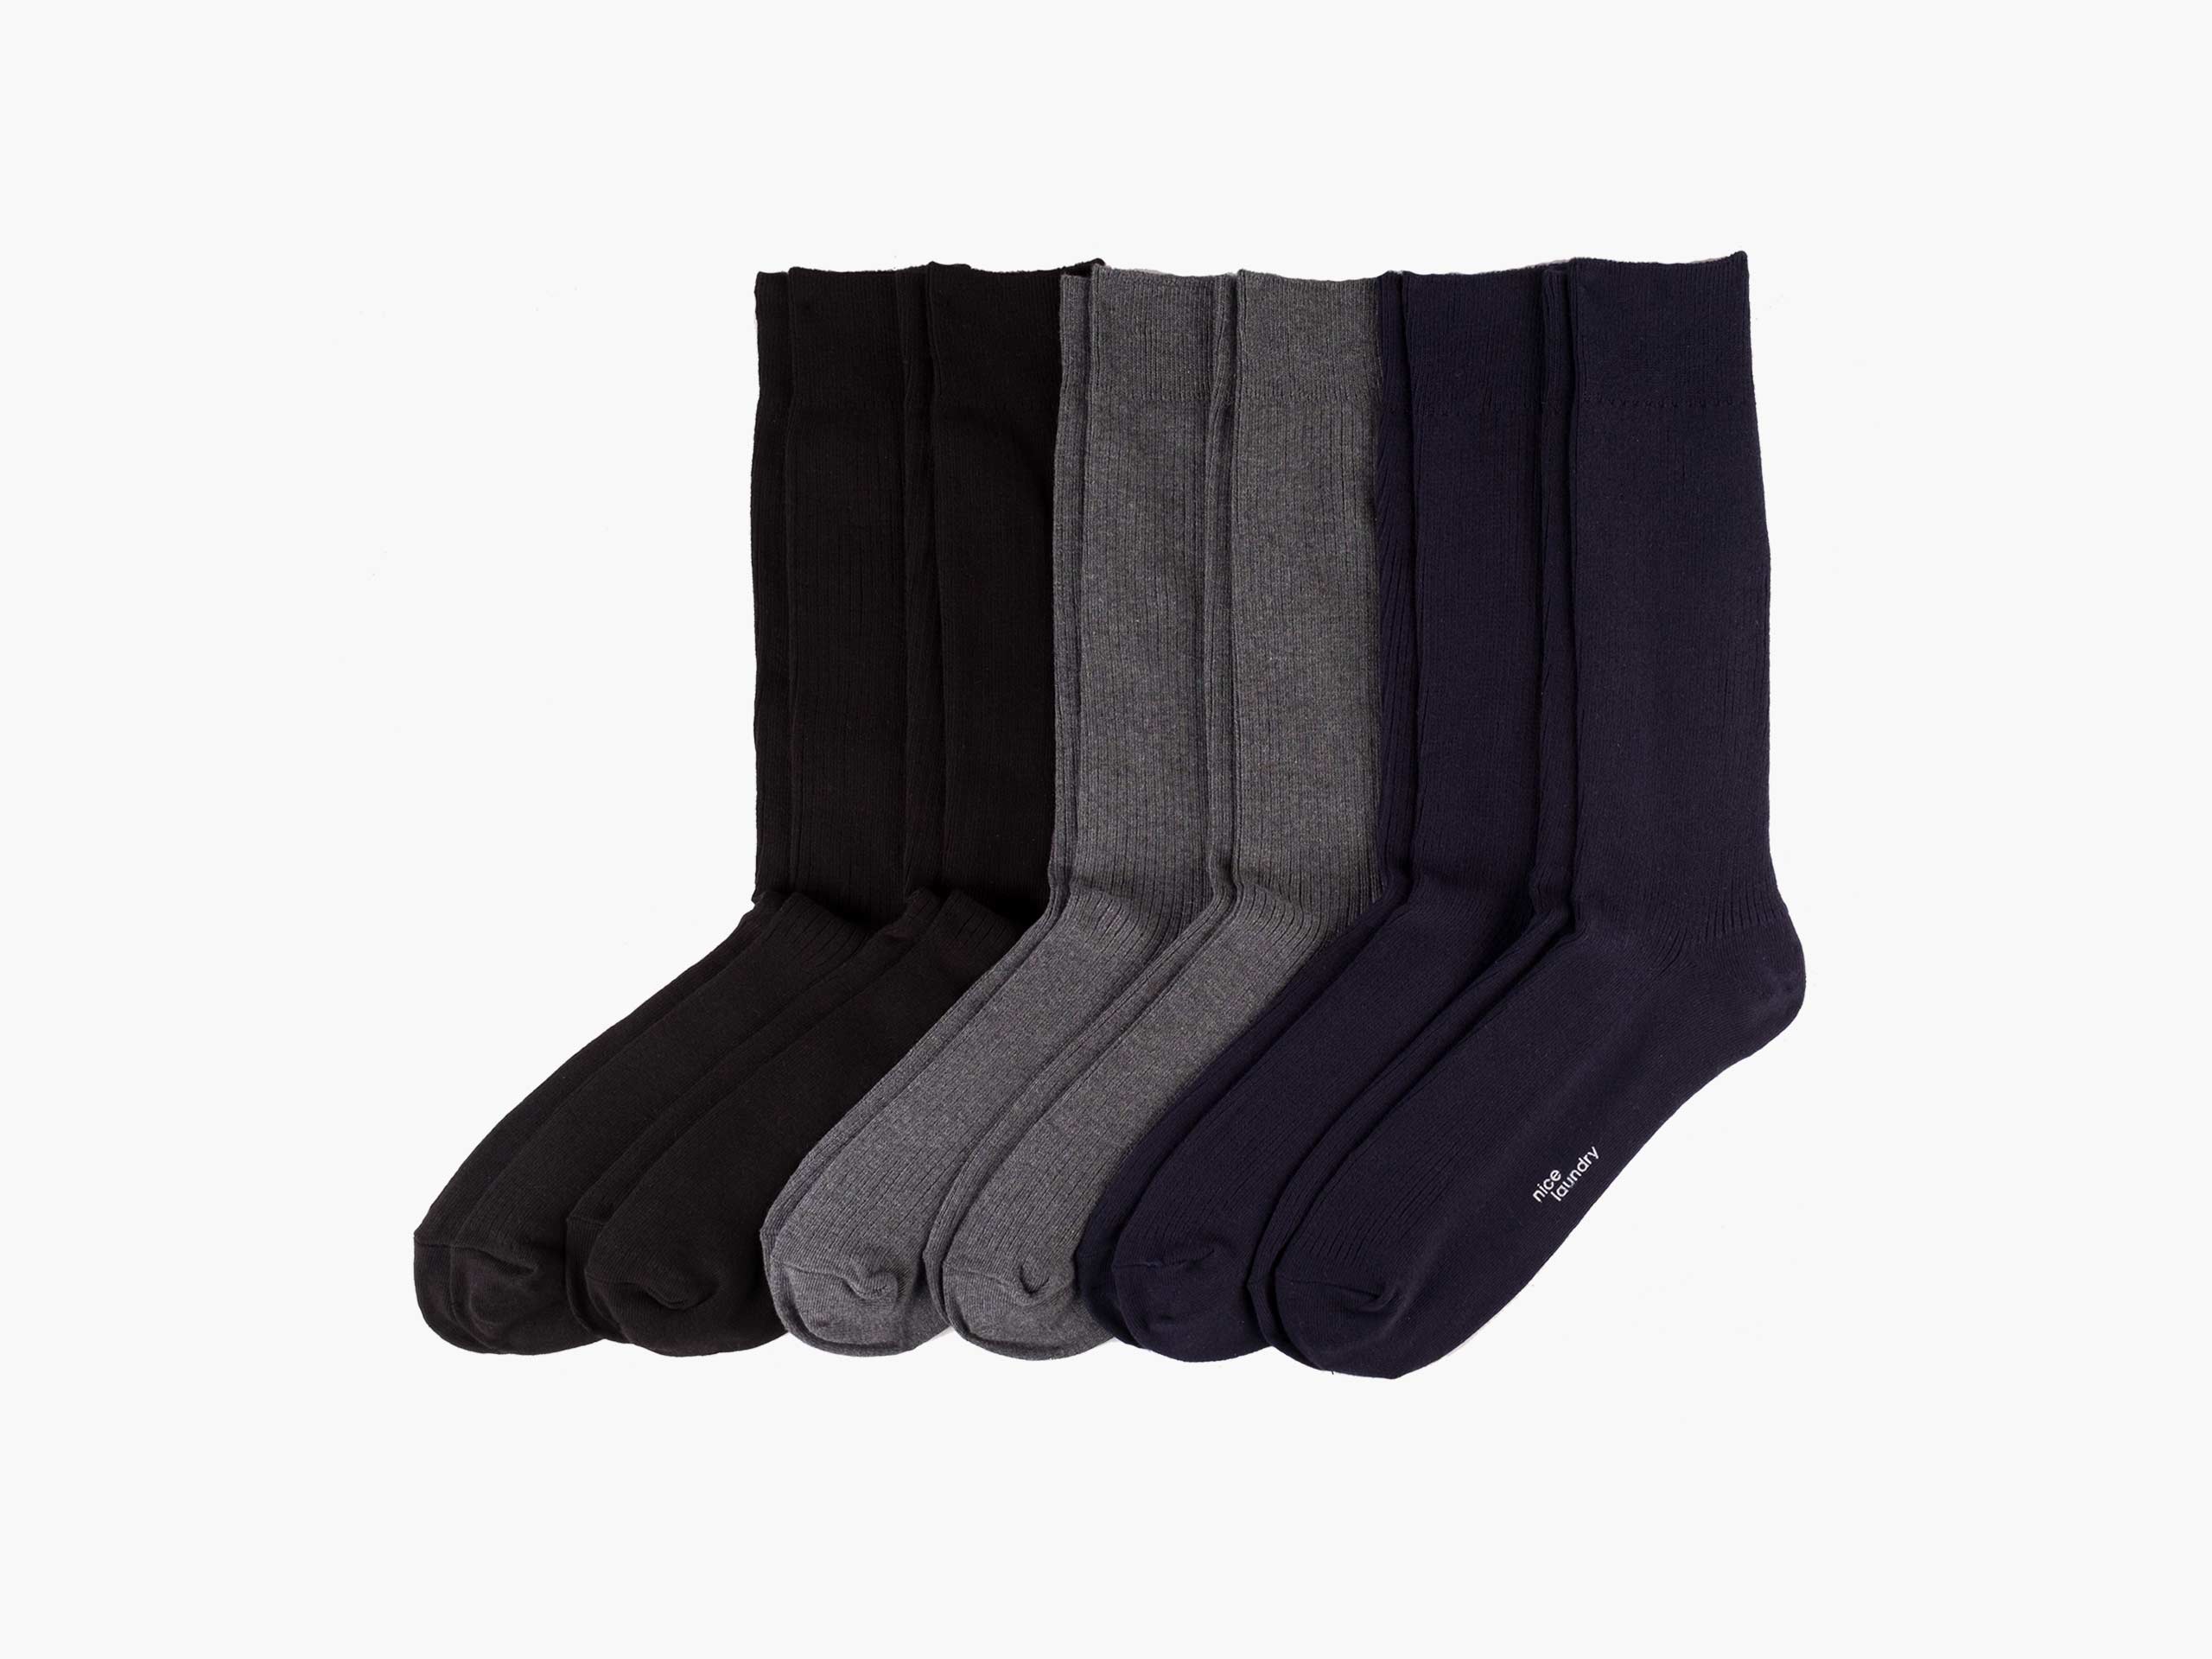 True Ribbed Dress Socks | NICE LAUNDRY – Nice Laundry